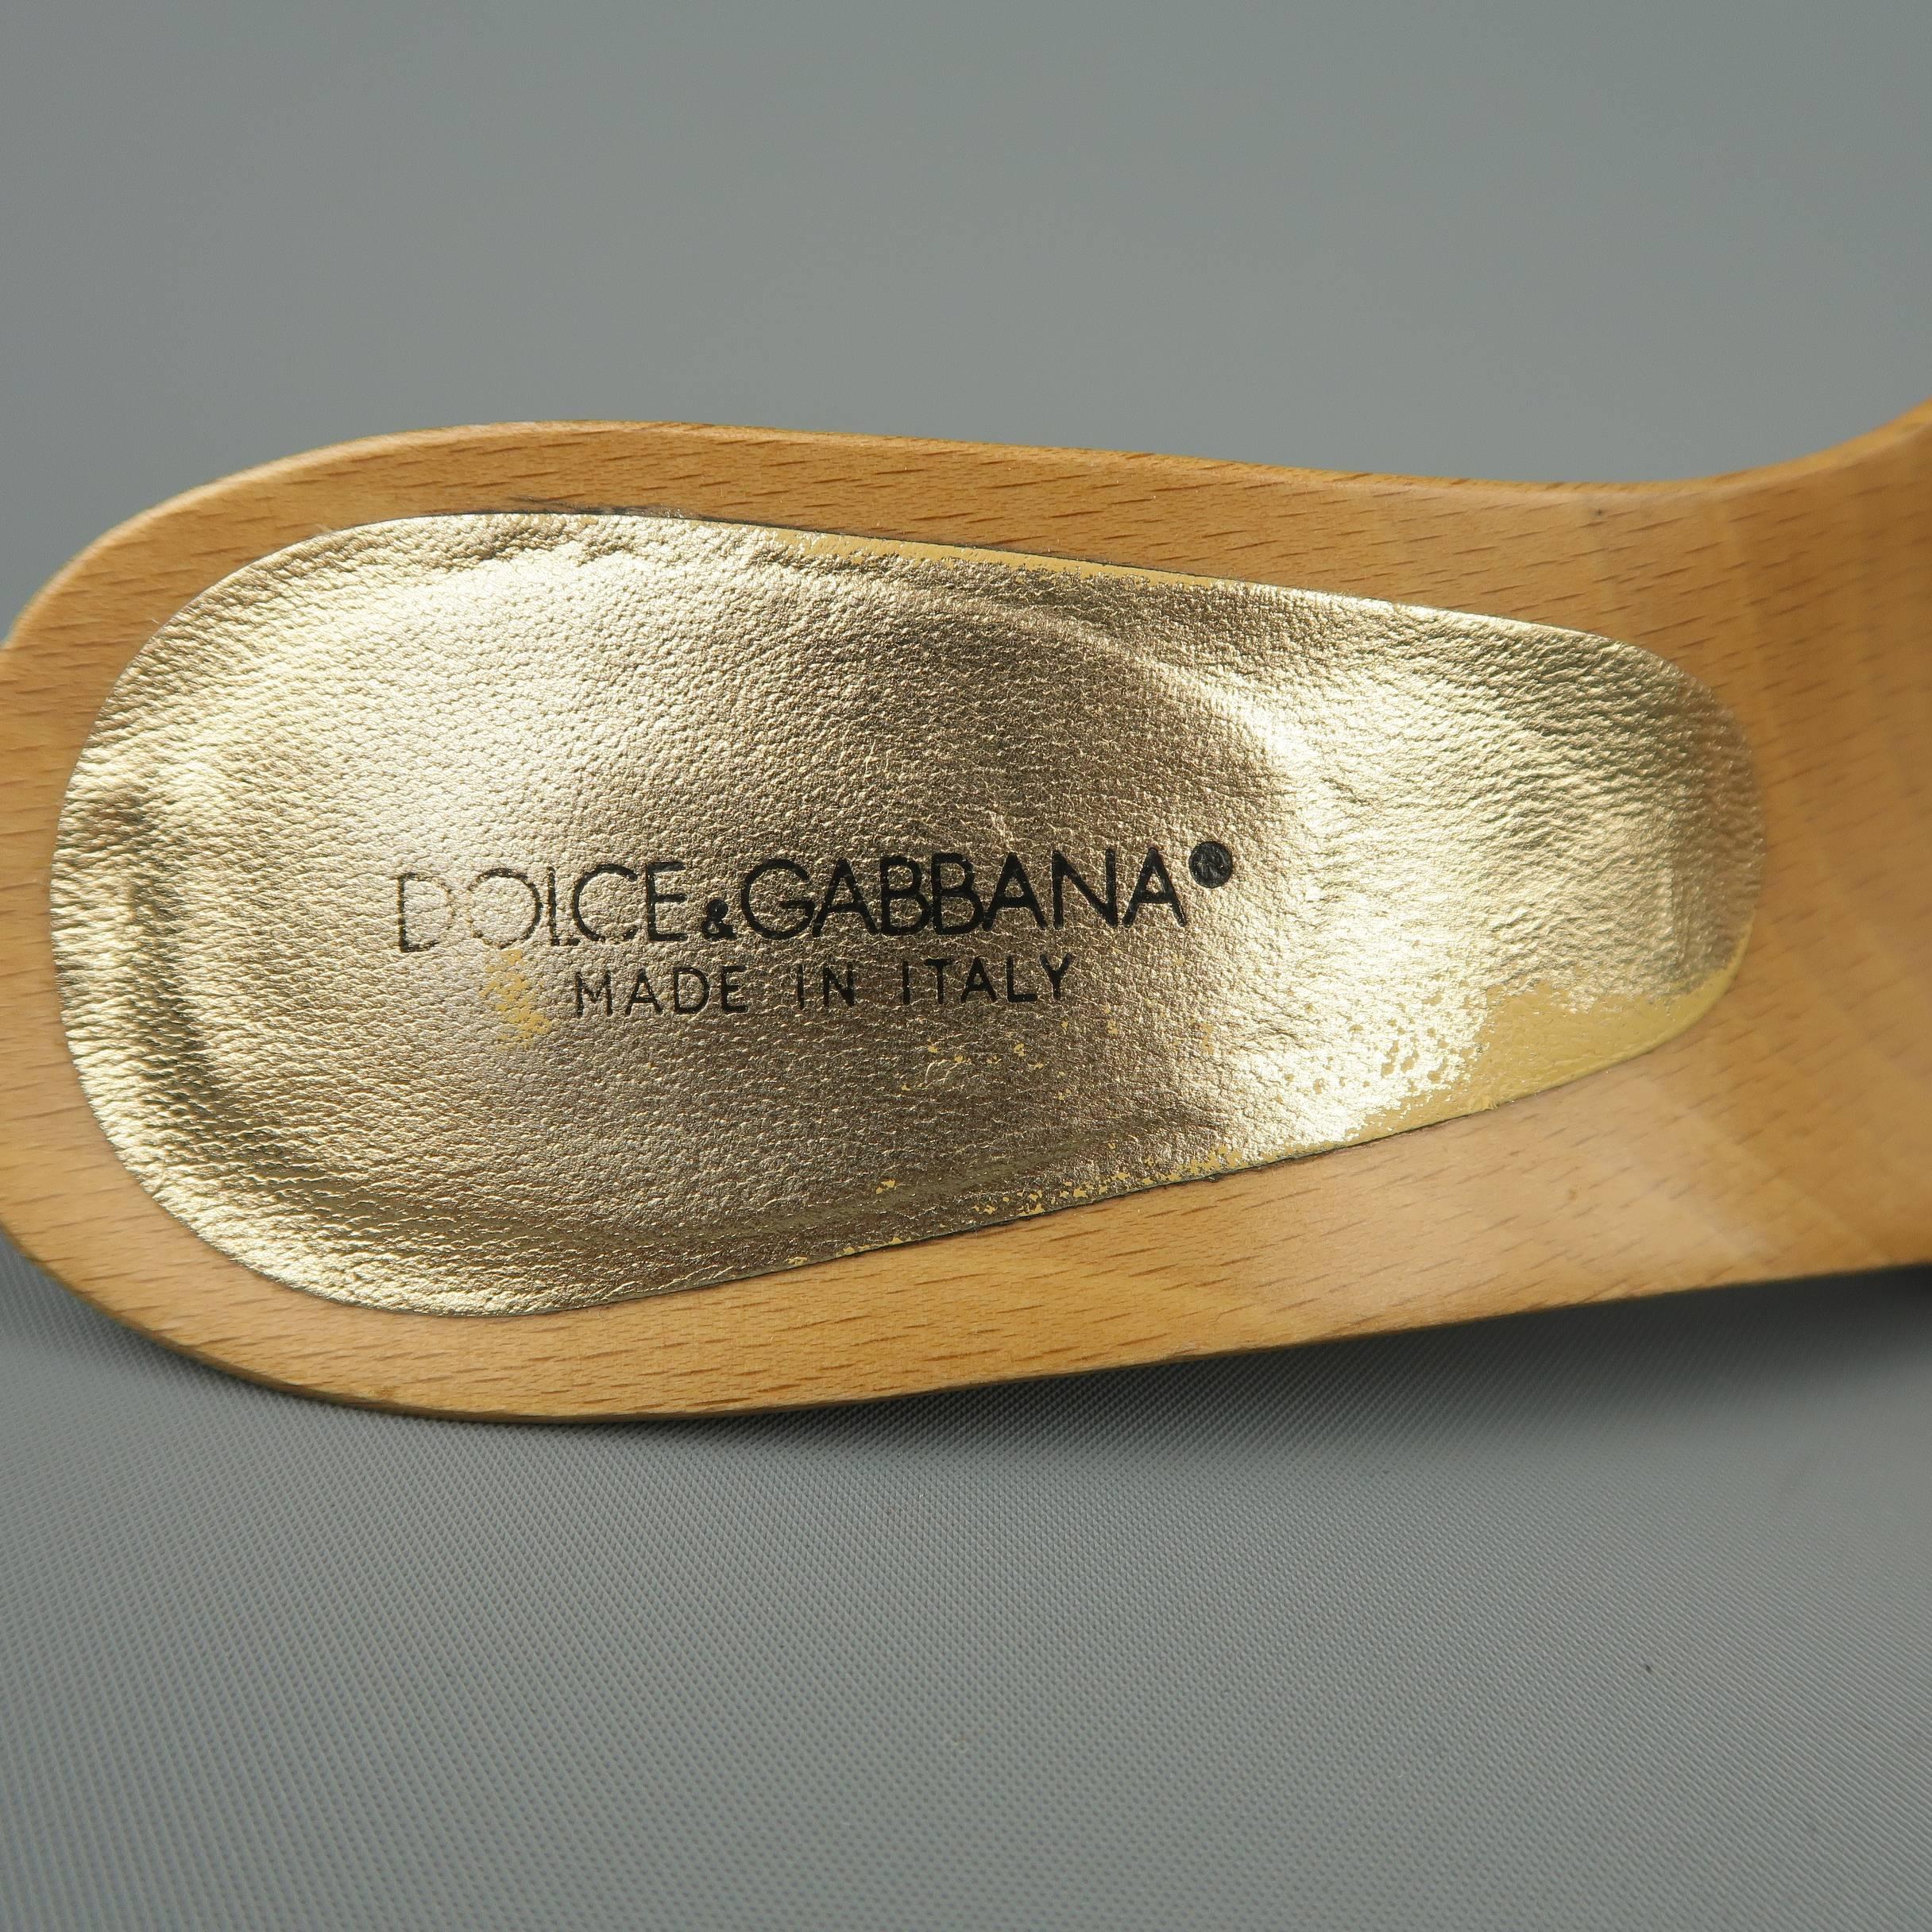 Women's DOLCE & GABBANA Size 7 Blue Rhinestone Suede Wooden Platform Mule Sandals